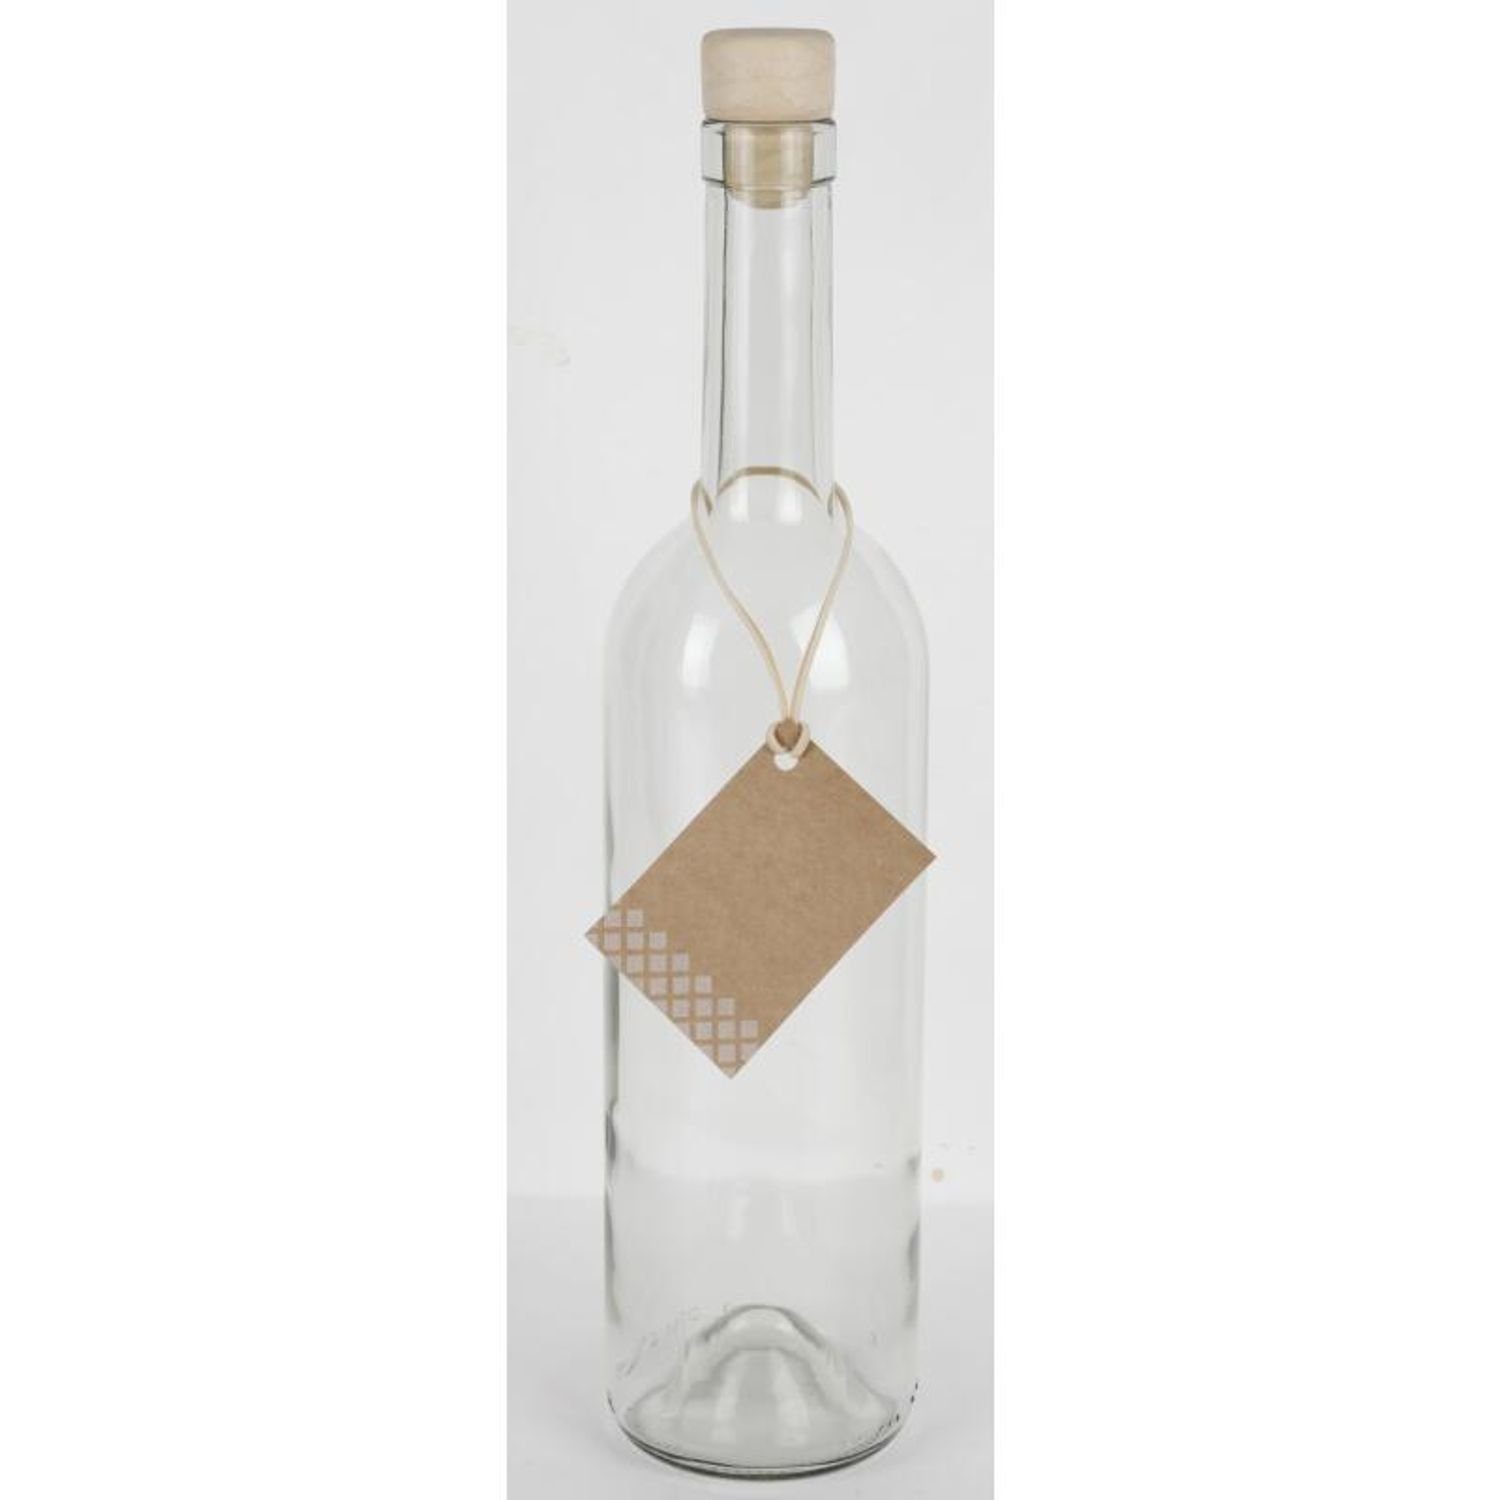 Omega Spolka Jawna Trinkflasche Korkenverschluss Wasser 0,75L 15x Trinken Küc Saft Glasflasche Etikett